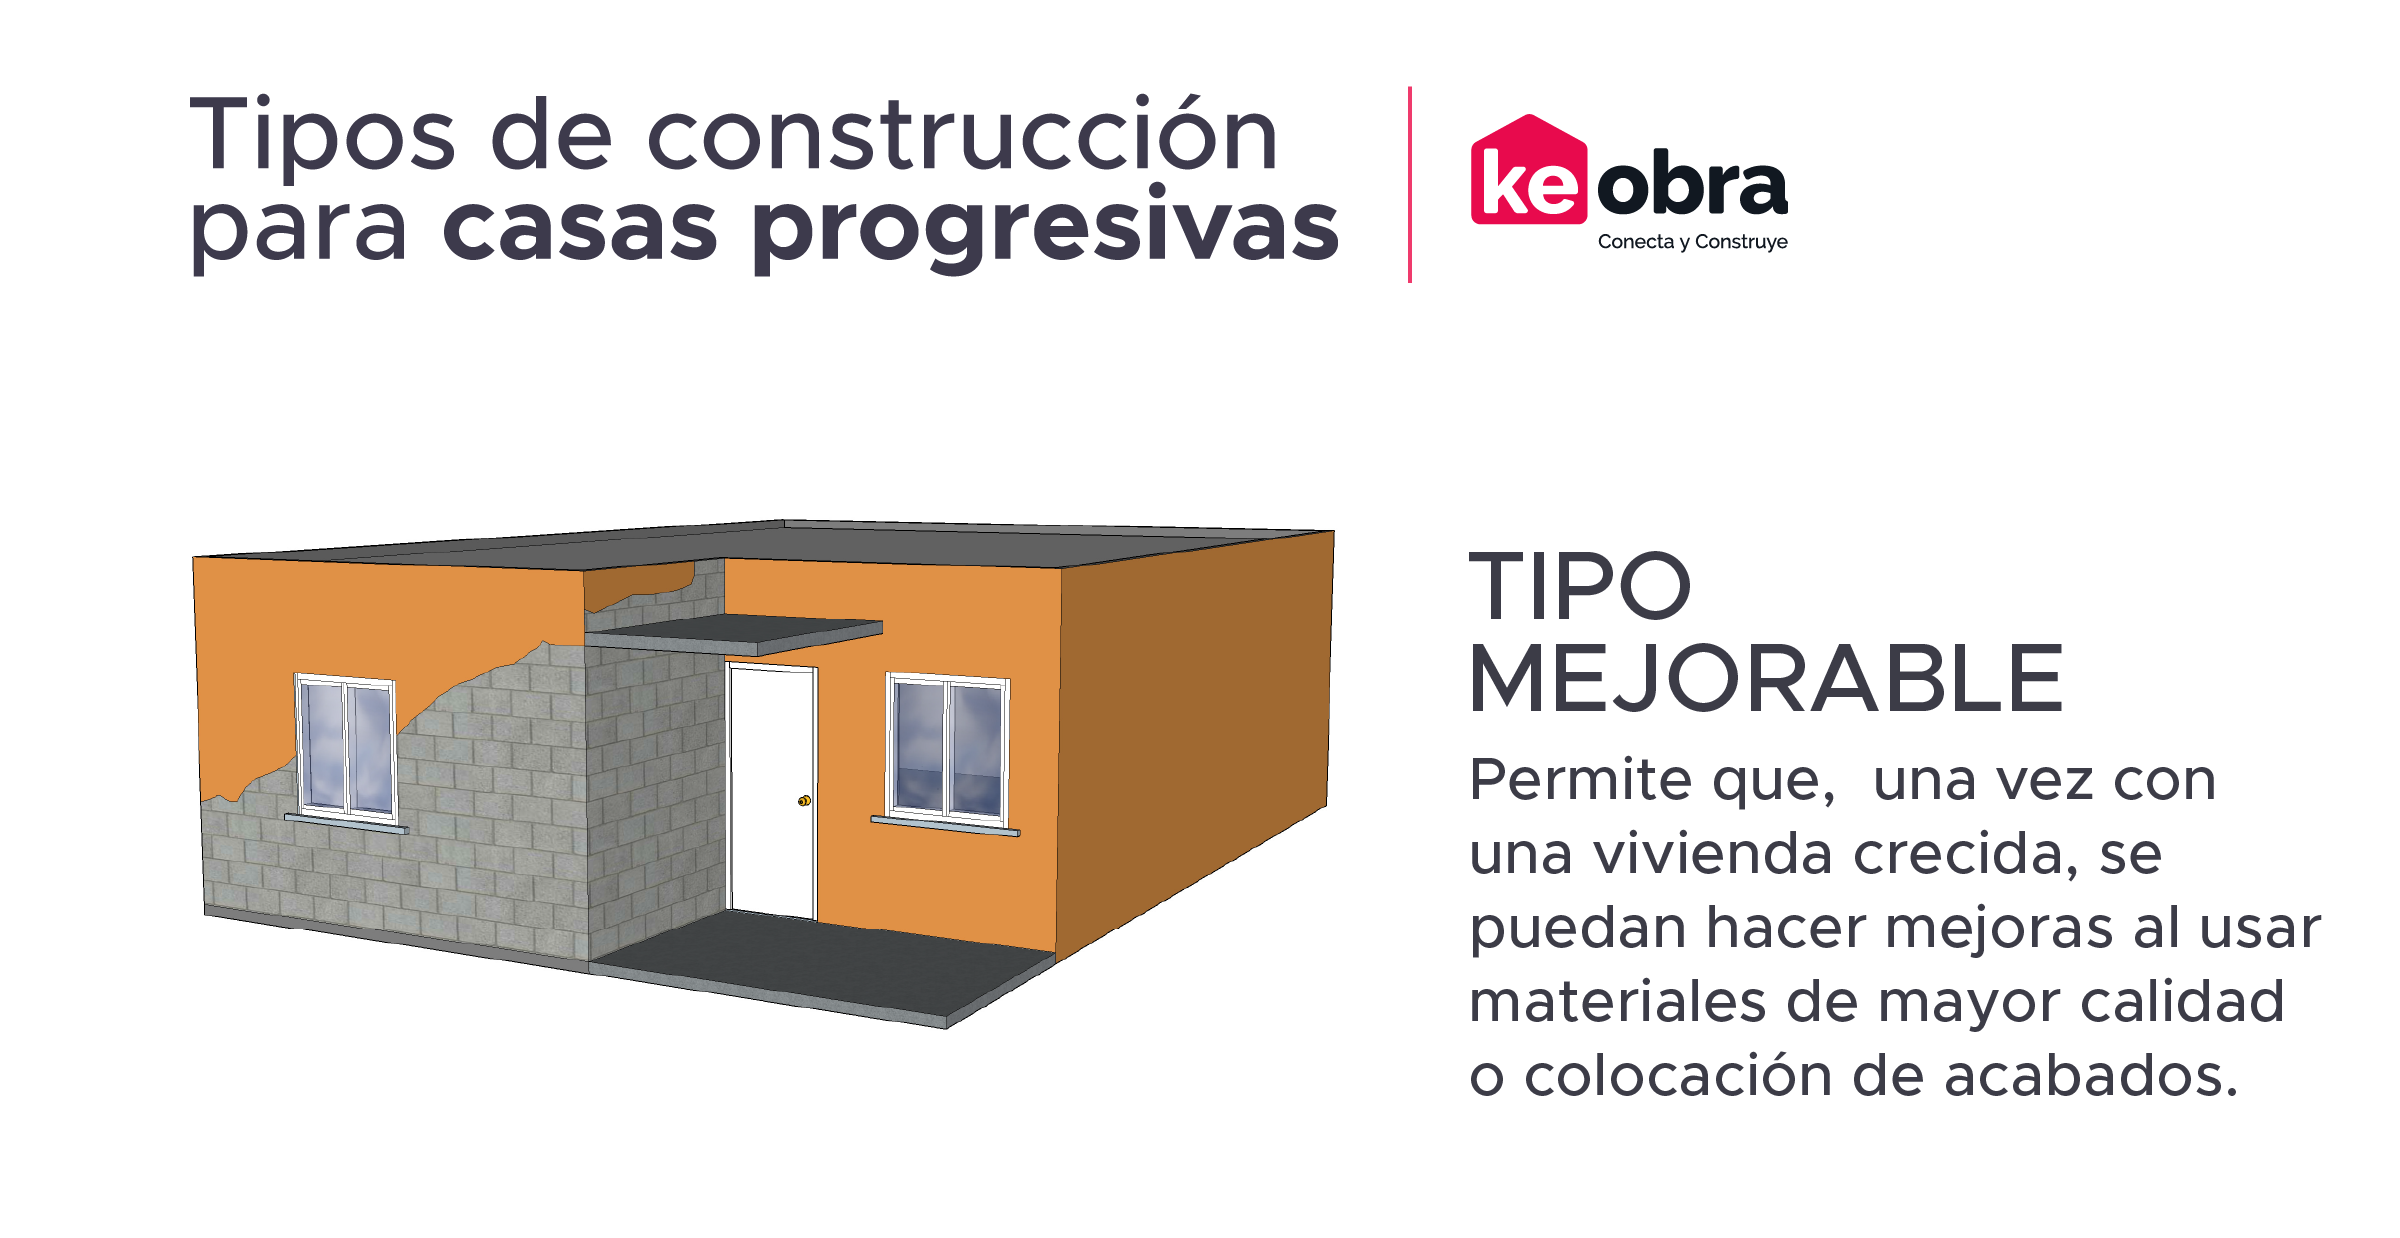 Descubre qué es y cómo construir una casa o vivienda progresiva, identifica diseños de casas de este tipo y planea tu proyecto. 